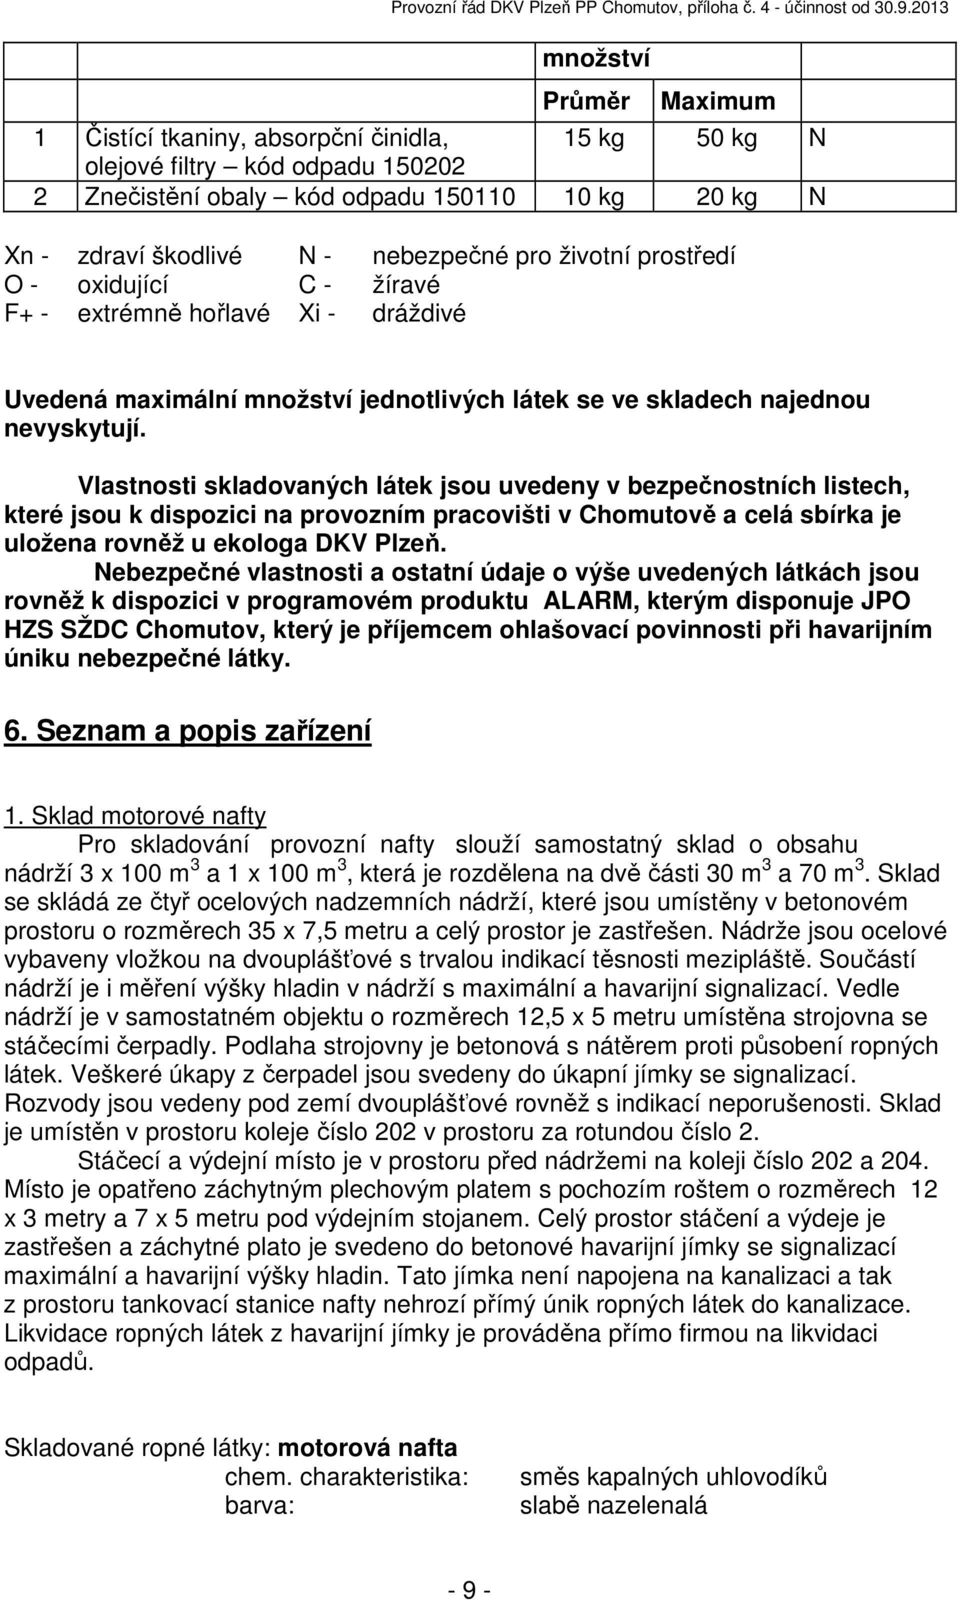 Vlastnosti skladovaných látek jsou uvedeny v bezpečnostních listech, které jsou k dispozici na provozním pracovišti v Chomutově a celá sbírka je uložena rovněž u ekologa DKV Plzeň.